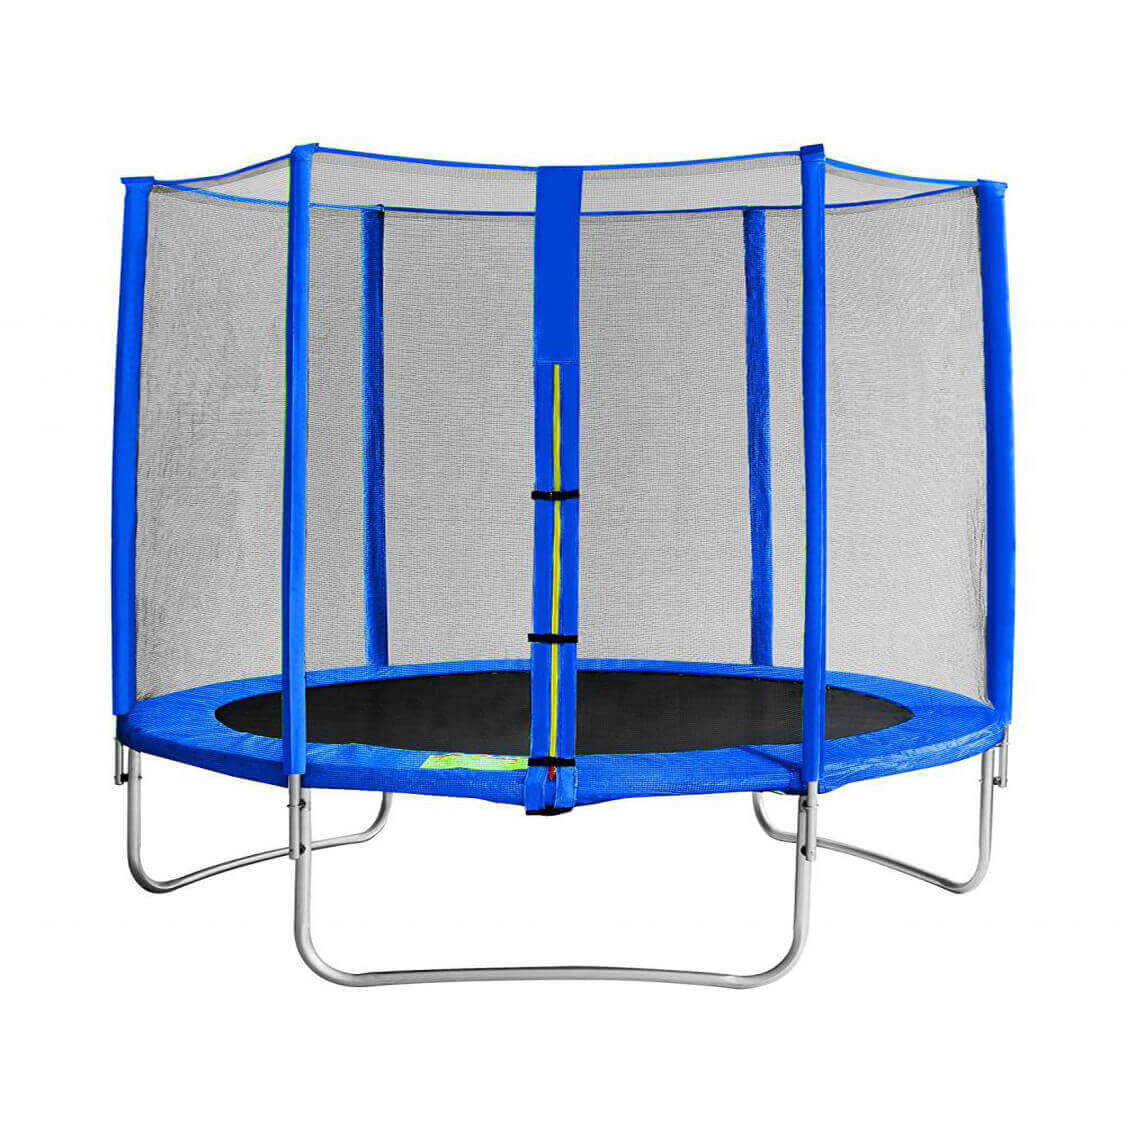 milani home trampolino elastico per bambini colore blu per giardino grande blu 305 x 245 x 305 cm